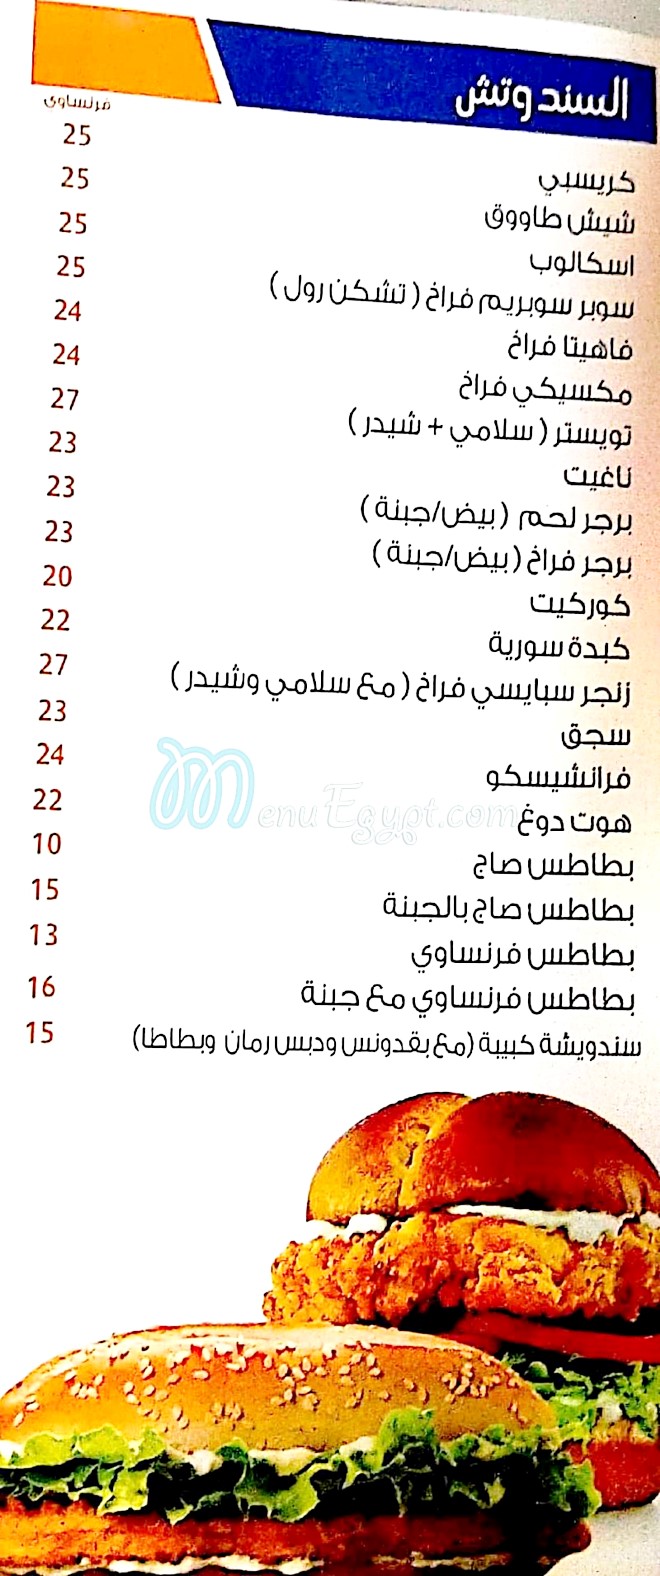 El Badr El Demeshqy online menu